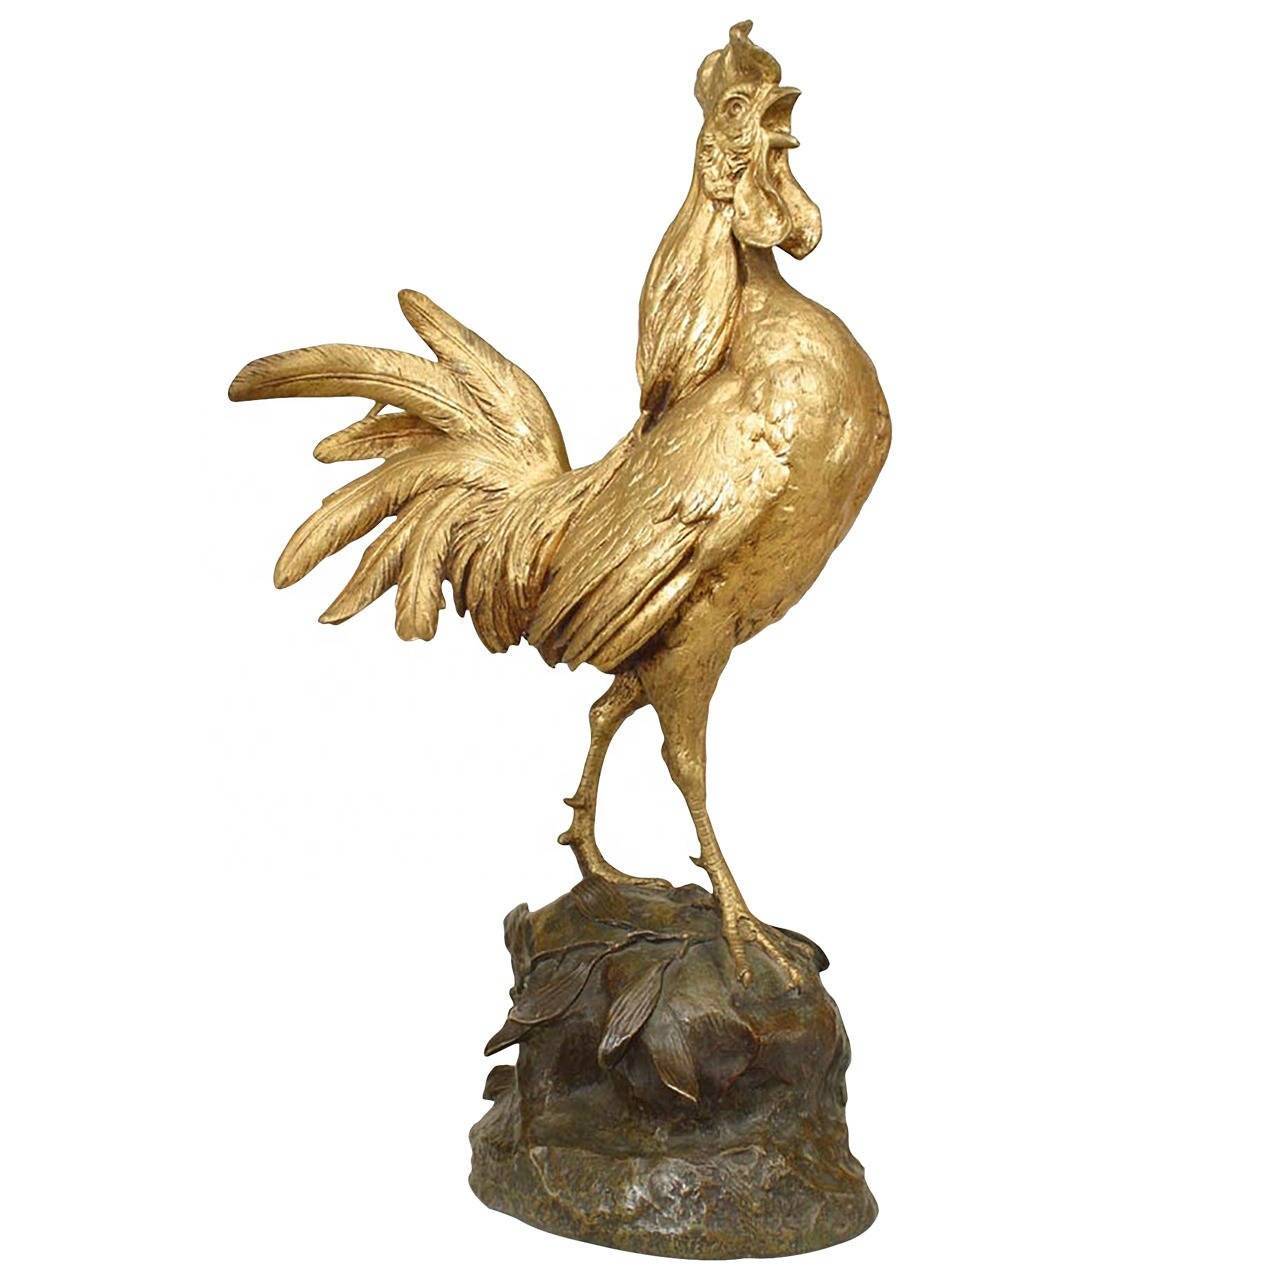 OEM Versuergung Bronze Bald Eagle Statue - Outdoor Dekoratioun Chinesesch Liewensgréisst Zodiac Bronze Chicken Skulptur - Atisan Works